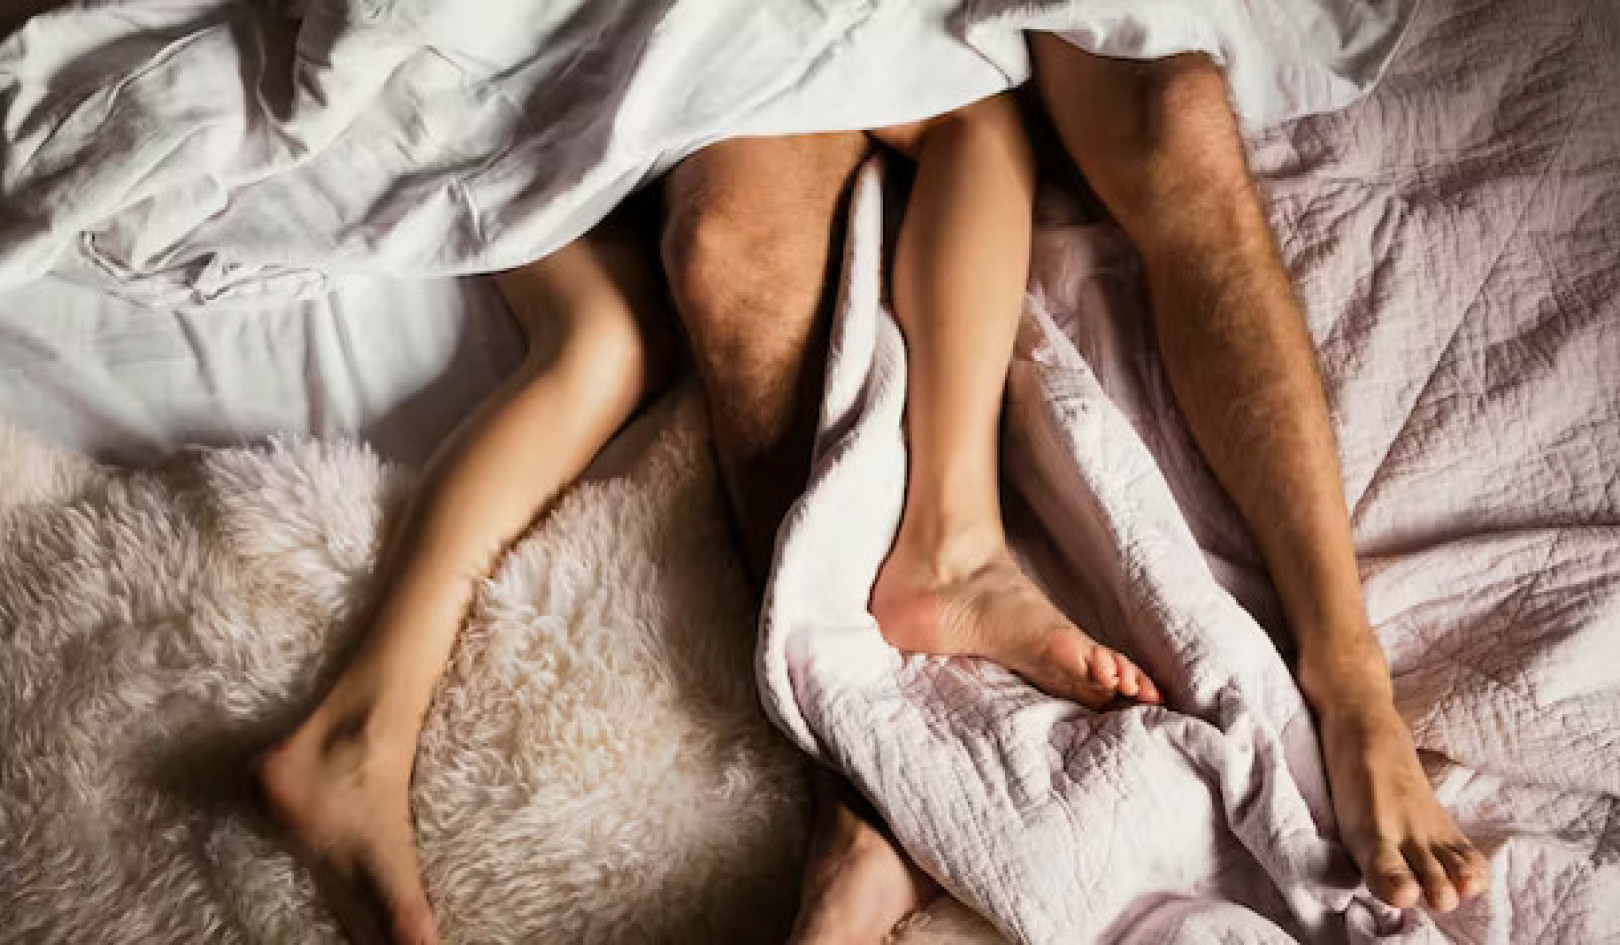 Preenchendo a lacuna do orgasmo: as realidades do prazer feminino na intimidade